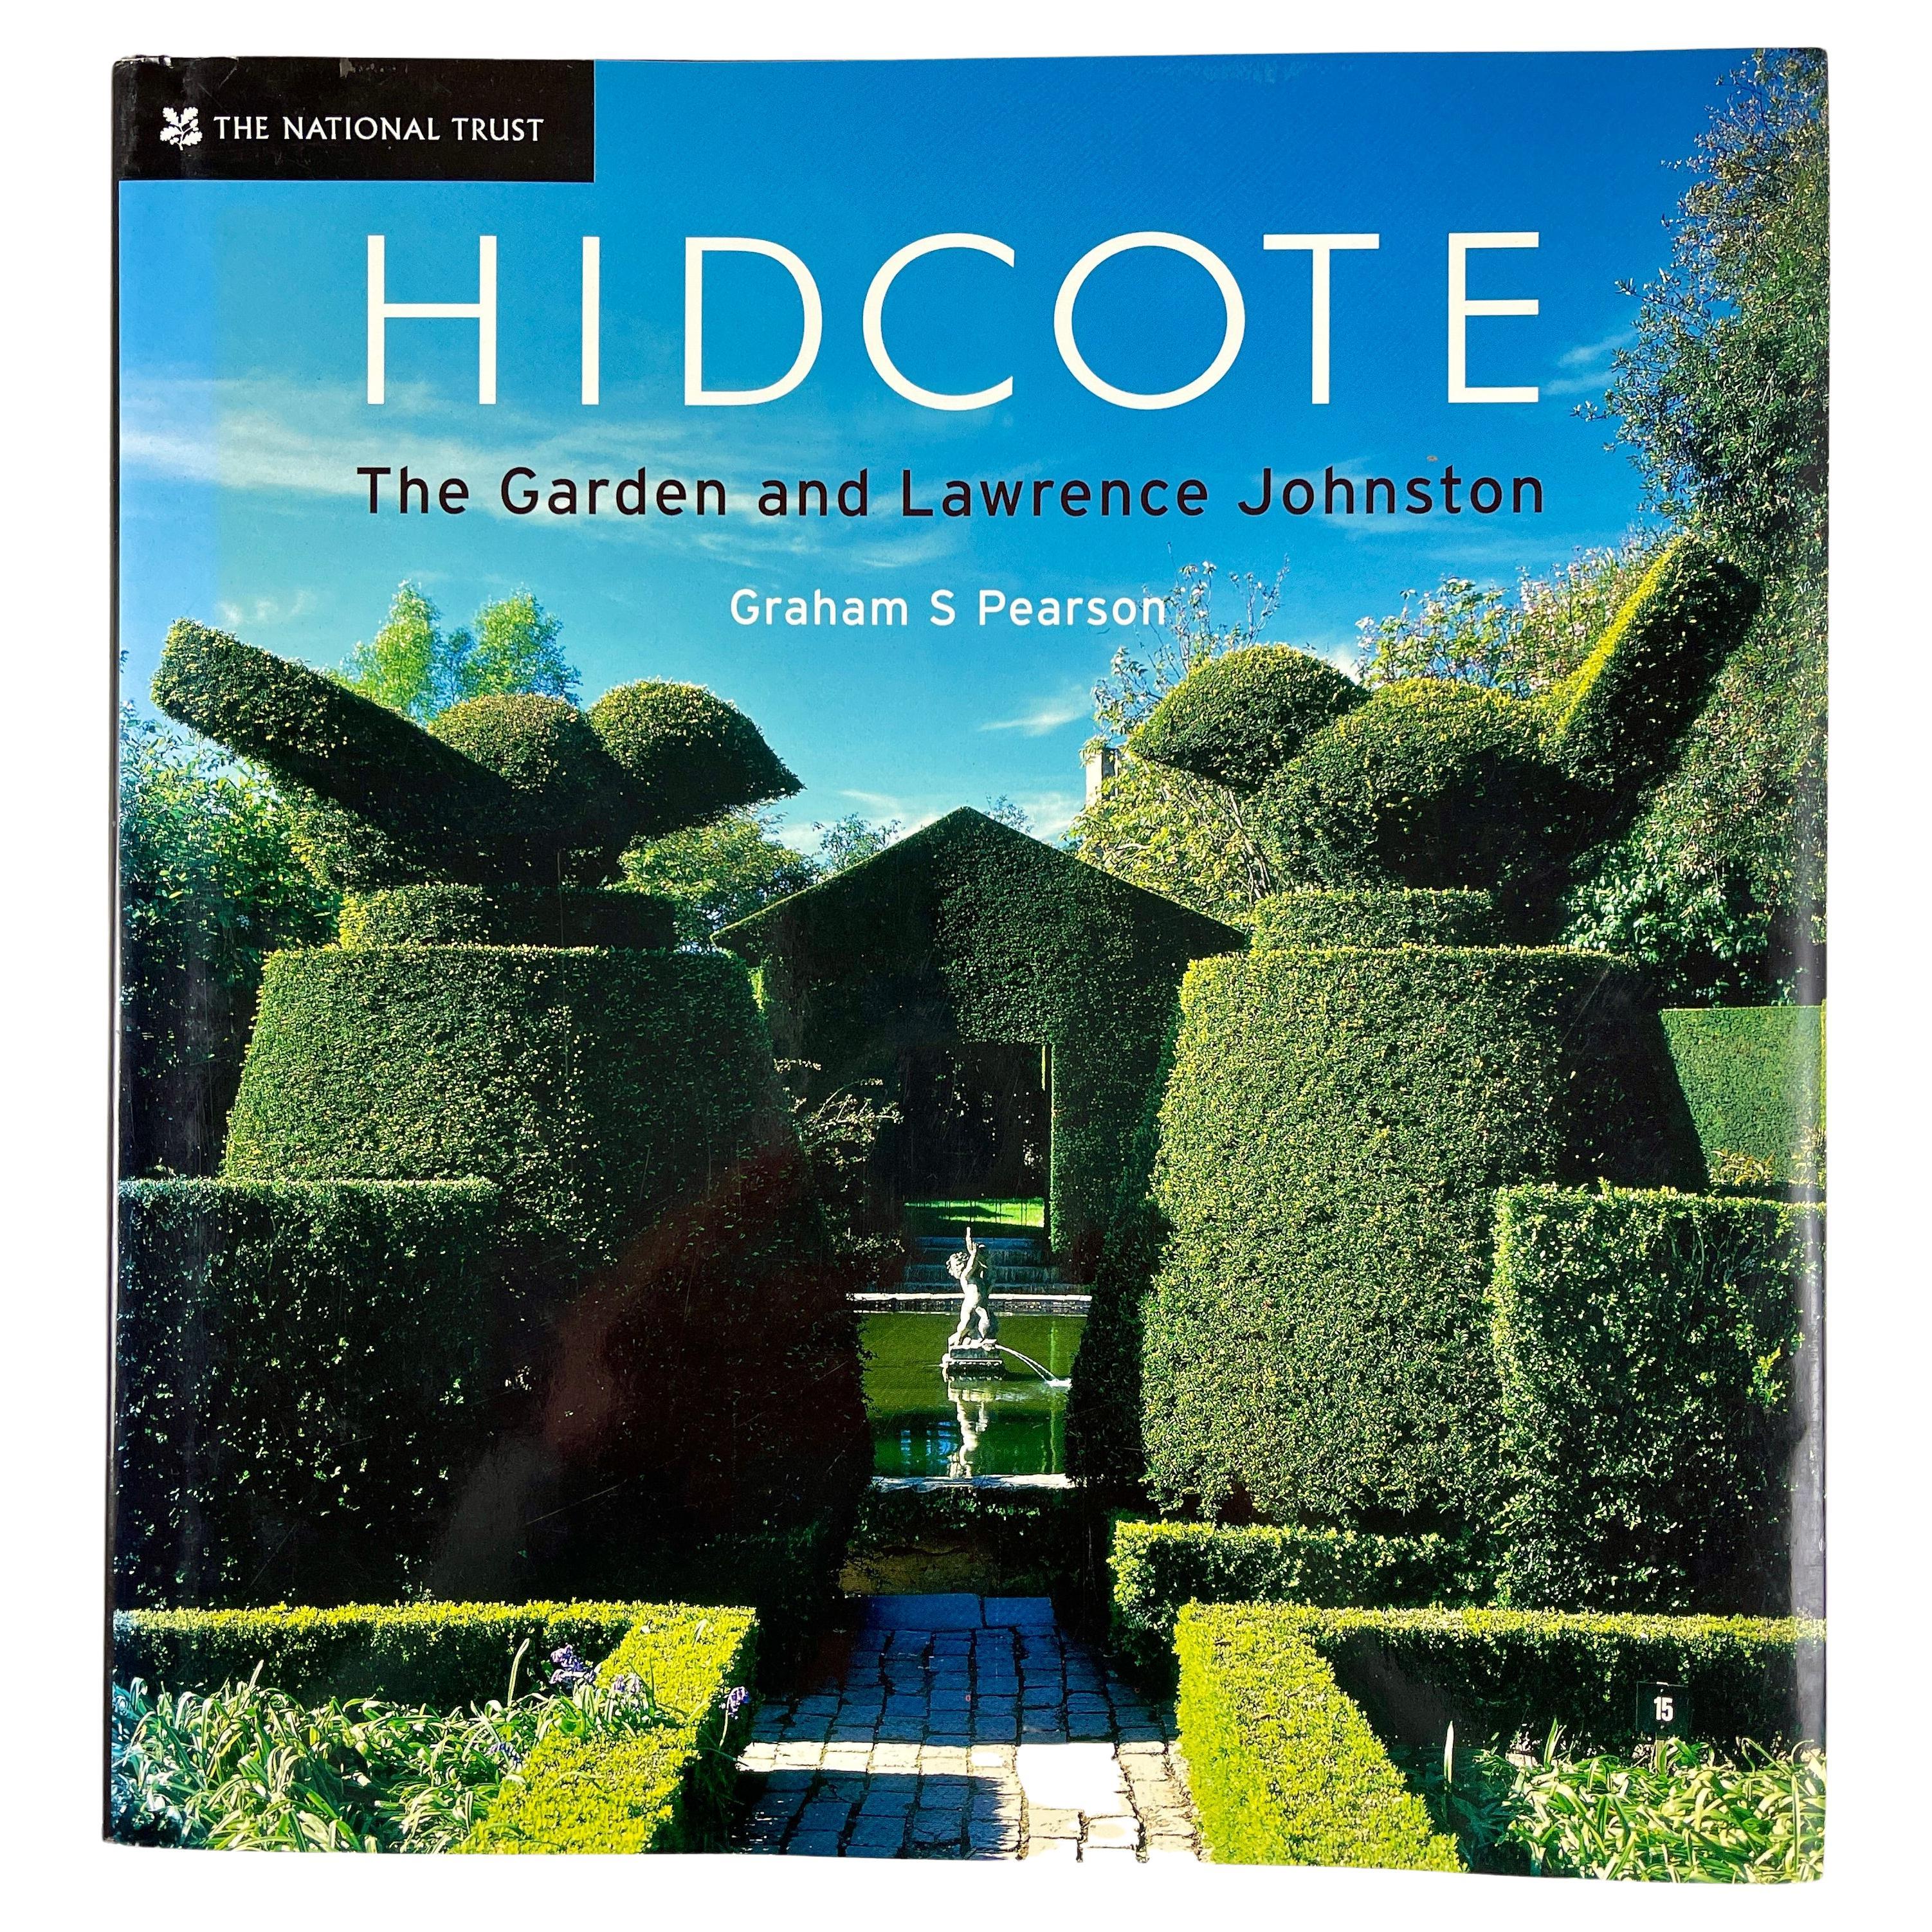 Hidcote the Garden et Lawrence Johnston, Livre du National Trust